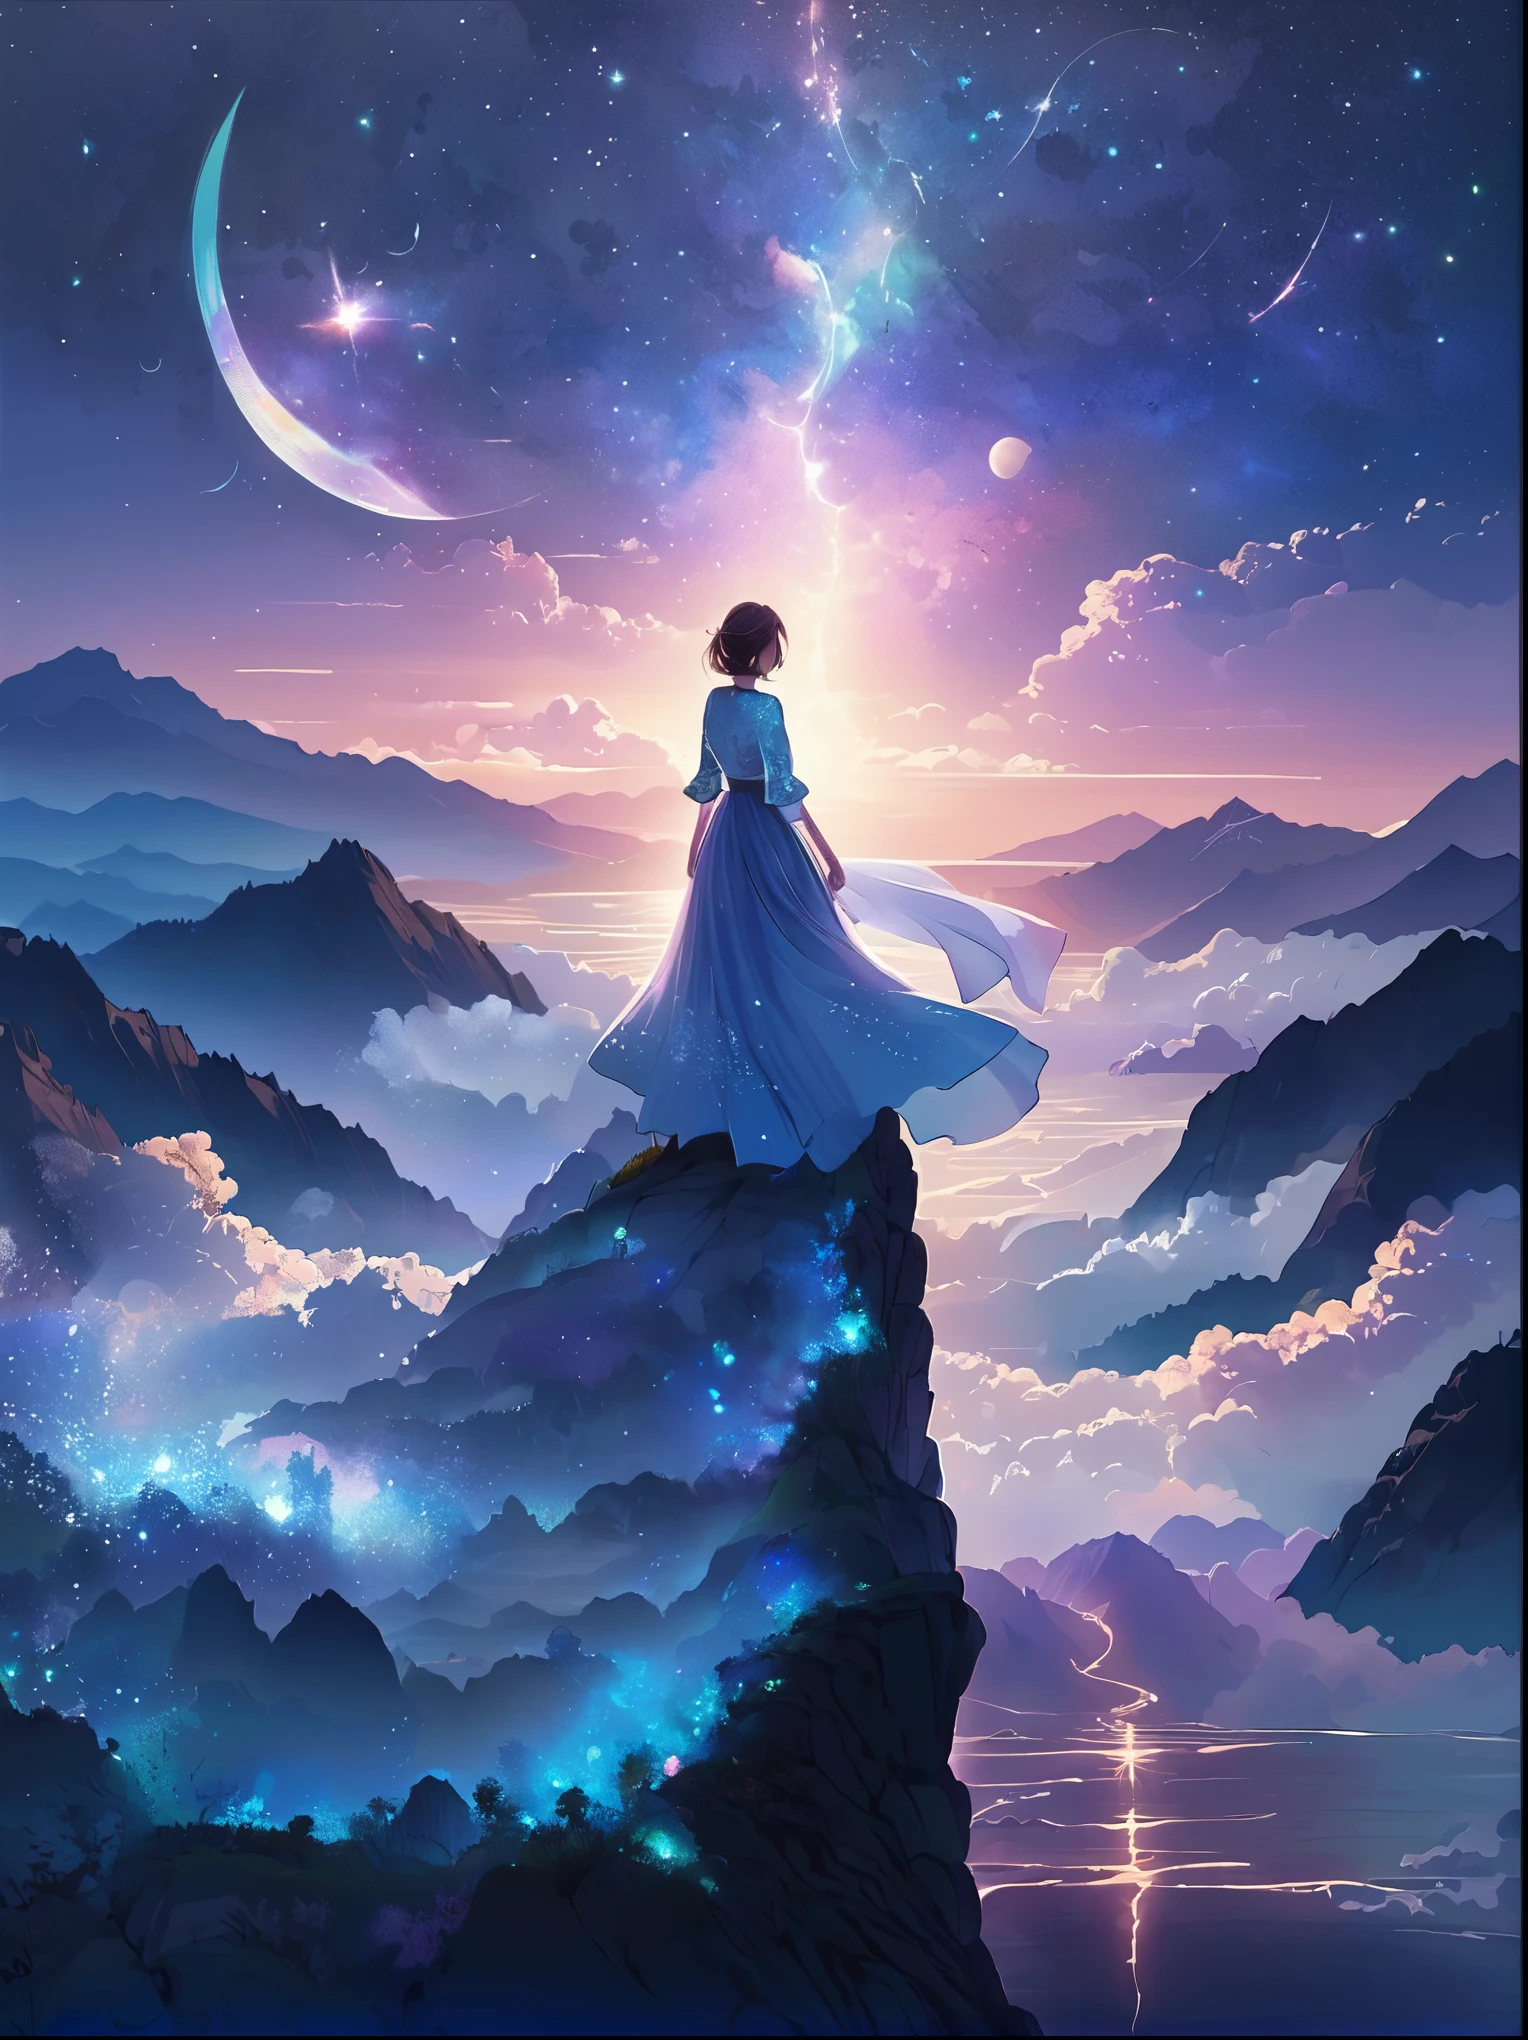 (从后面看)，一个男人站在悬崖上，在梦幻般的, 朦胧的风景，(女孩&#39;完美的背部)，(背对观众)，被宇宙能量漩涡包围，穿着飘逸长袍的人的背影，与天体气流融合，天空是一幅深紫色和蓝色的织锦，星光点缀，下面的景色隐约可见连绵起伏的山脉，这一幕宁静而崇高，捕捉宇宙的壮丽本质，一个沉思的身影敬畏地站着